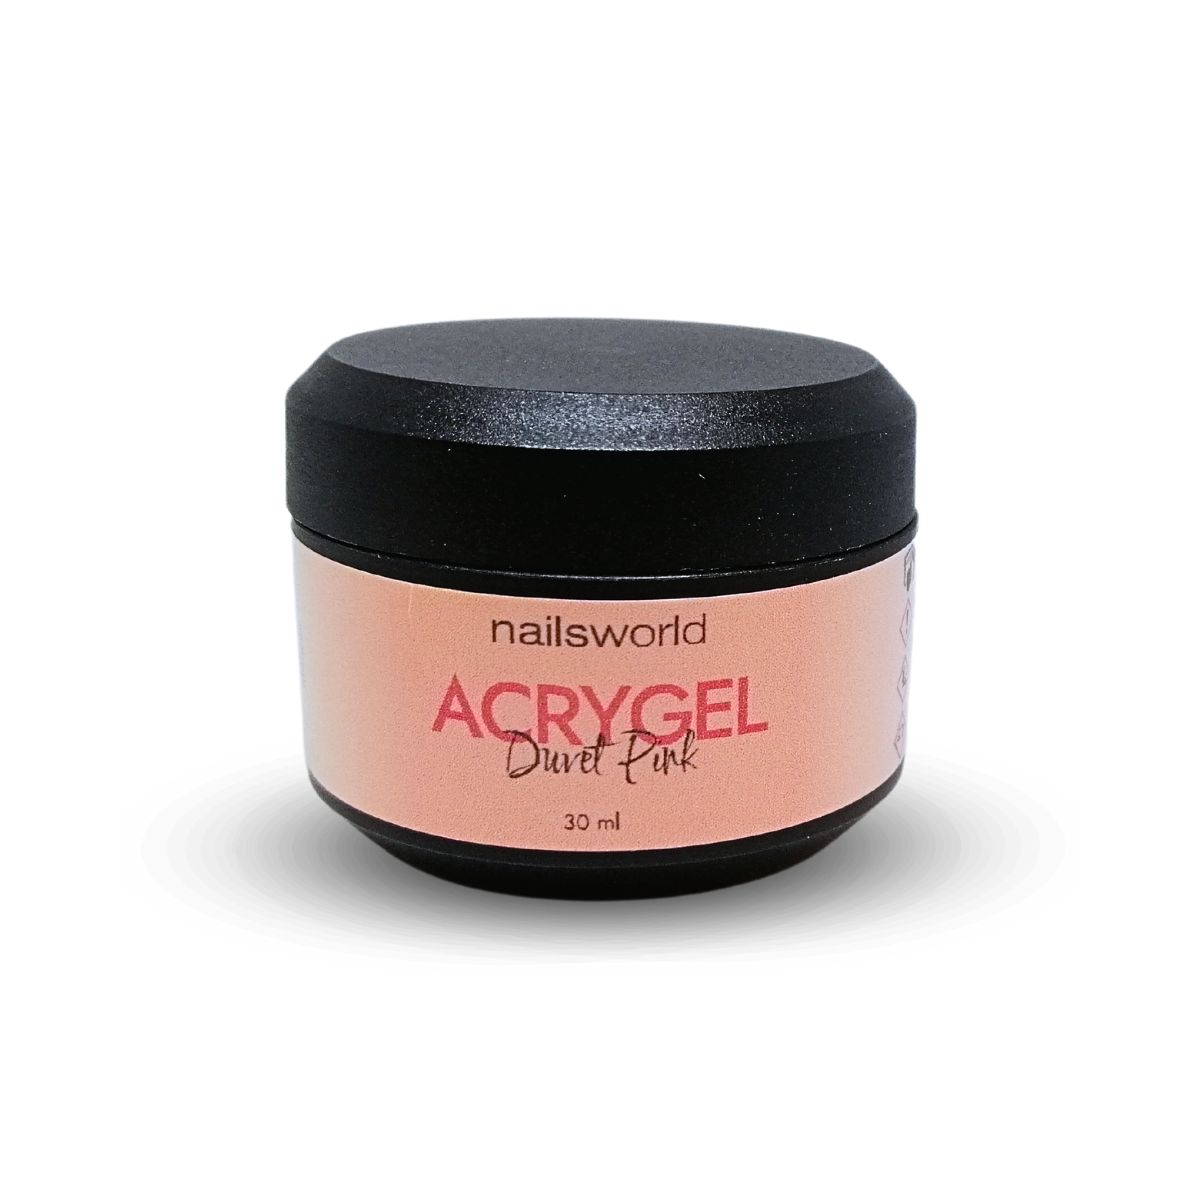 acrygel Nailsworld da 30 ml nella colorazione Duvet Pink